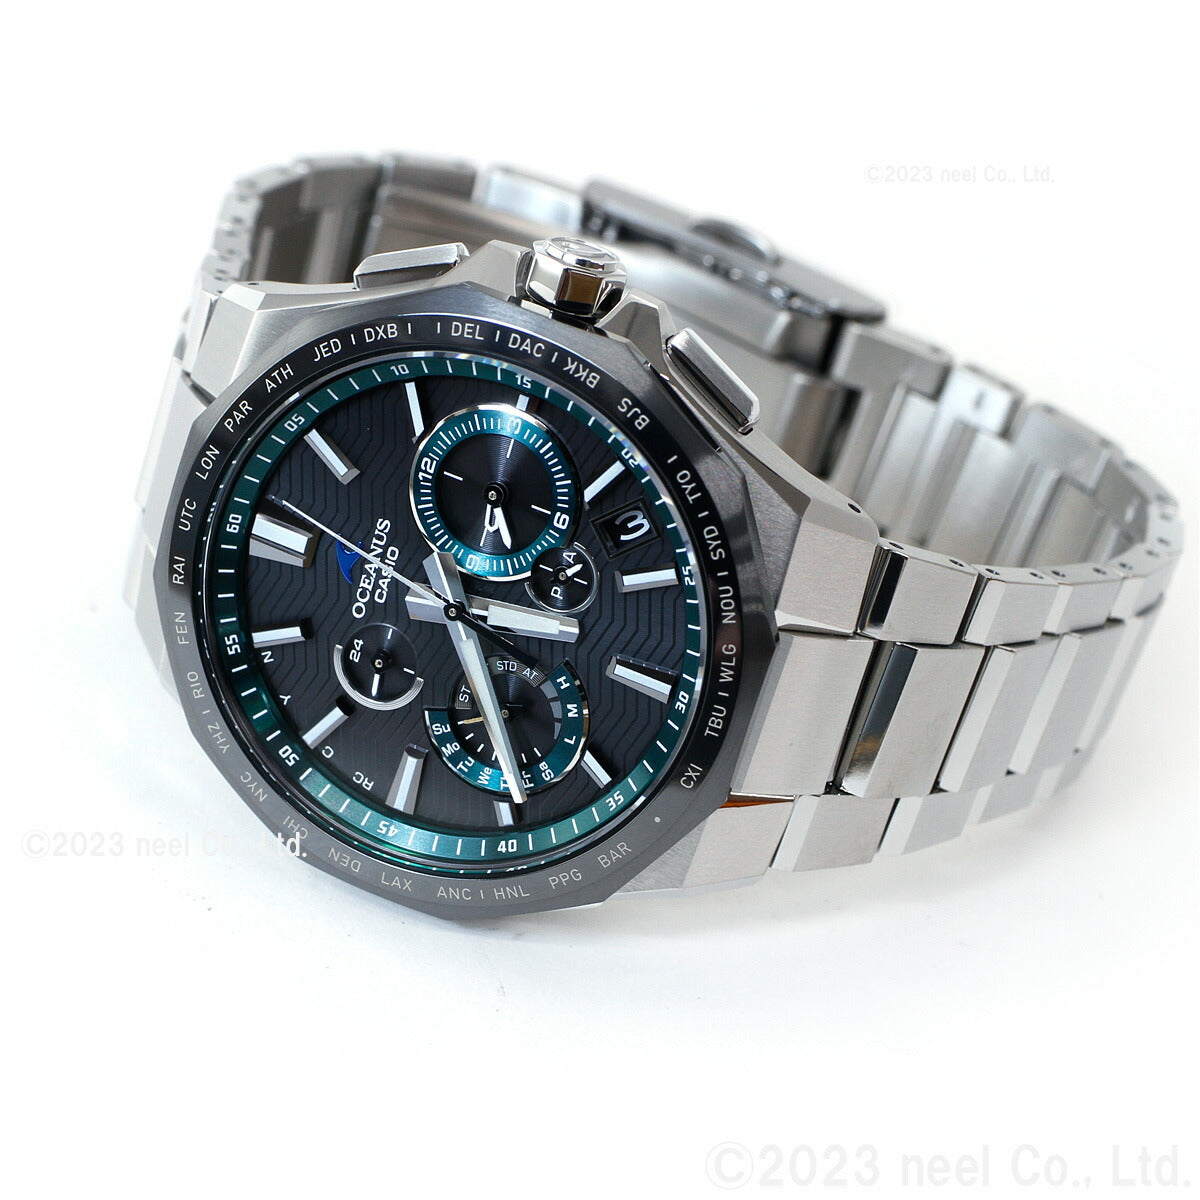 カシオ オシアナス 電波 ソーラー 腕時計 メンズ タフソーラー CASIO OCEANUS CLASSIC LINE OCW-T6000A-1AJF Premium Production Line